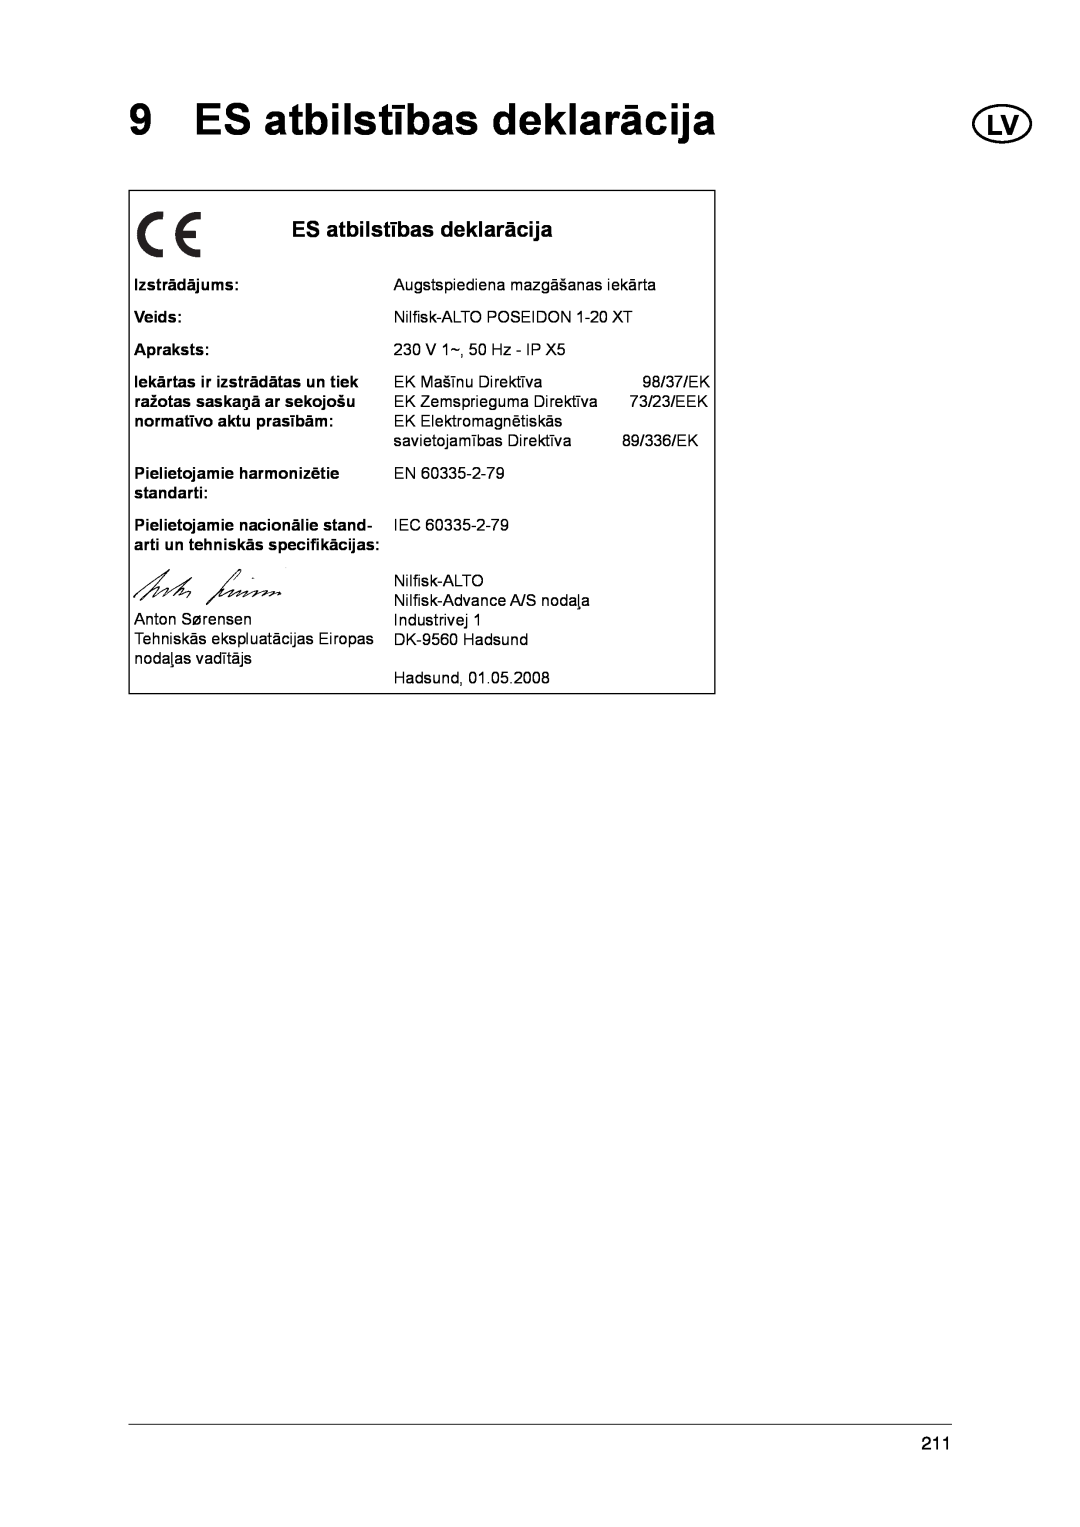 Nilfisk-ALTO 1-20 XT manual ES atbilstības deklarācija 